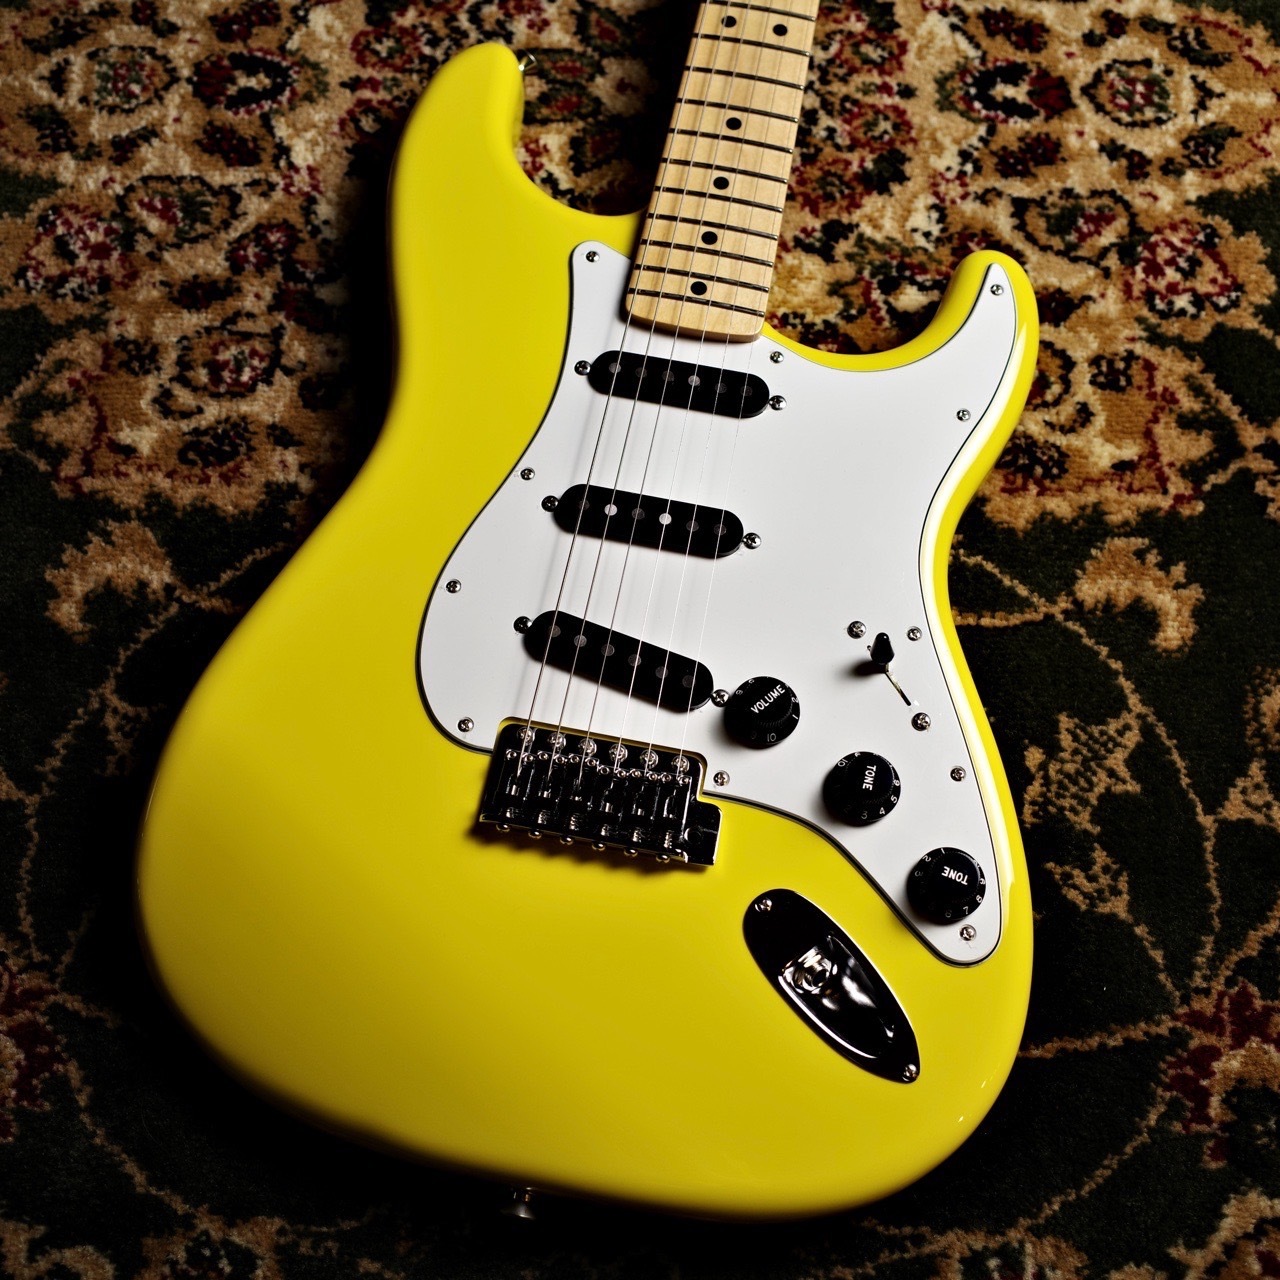 CONTENTSFender Made in Japan Limited International Color Stratocaster Monaco Yellow エレキギター ストラトキャスターこの商品について技術者による安心のアフターフォローギターアドバイザーが楽器選びをサポート最新情報を手 […]